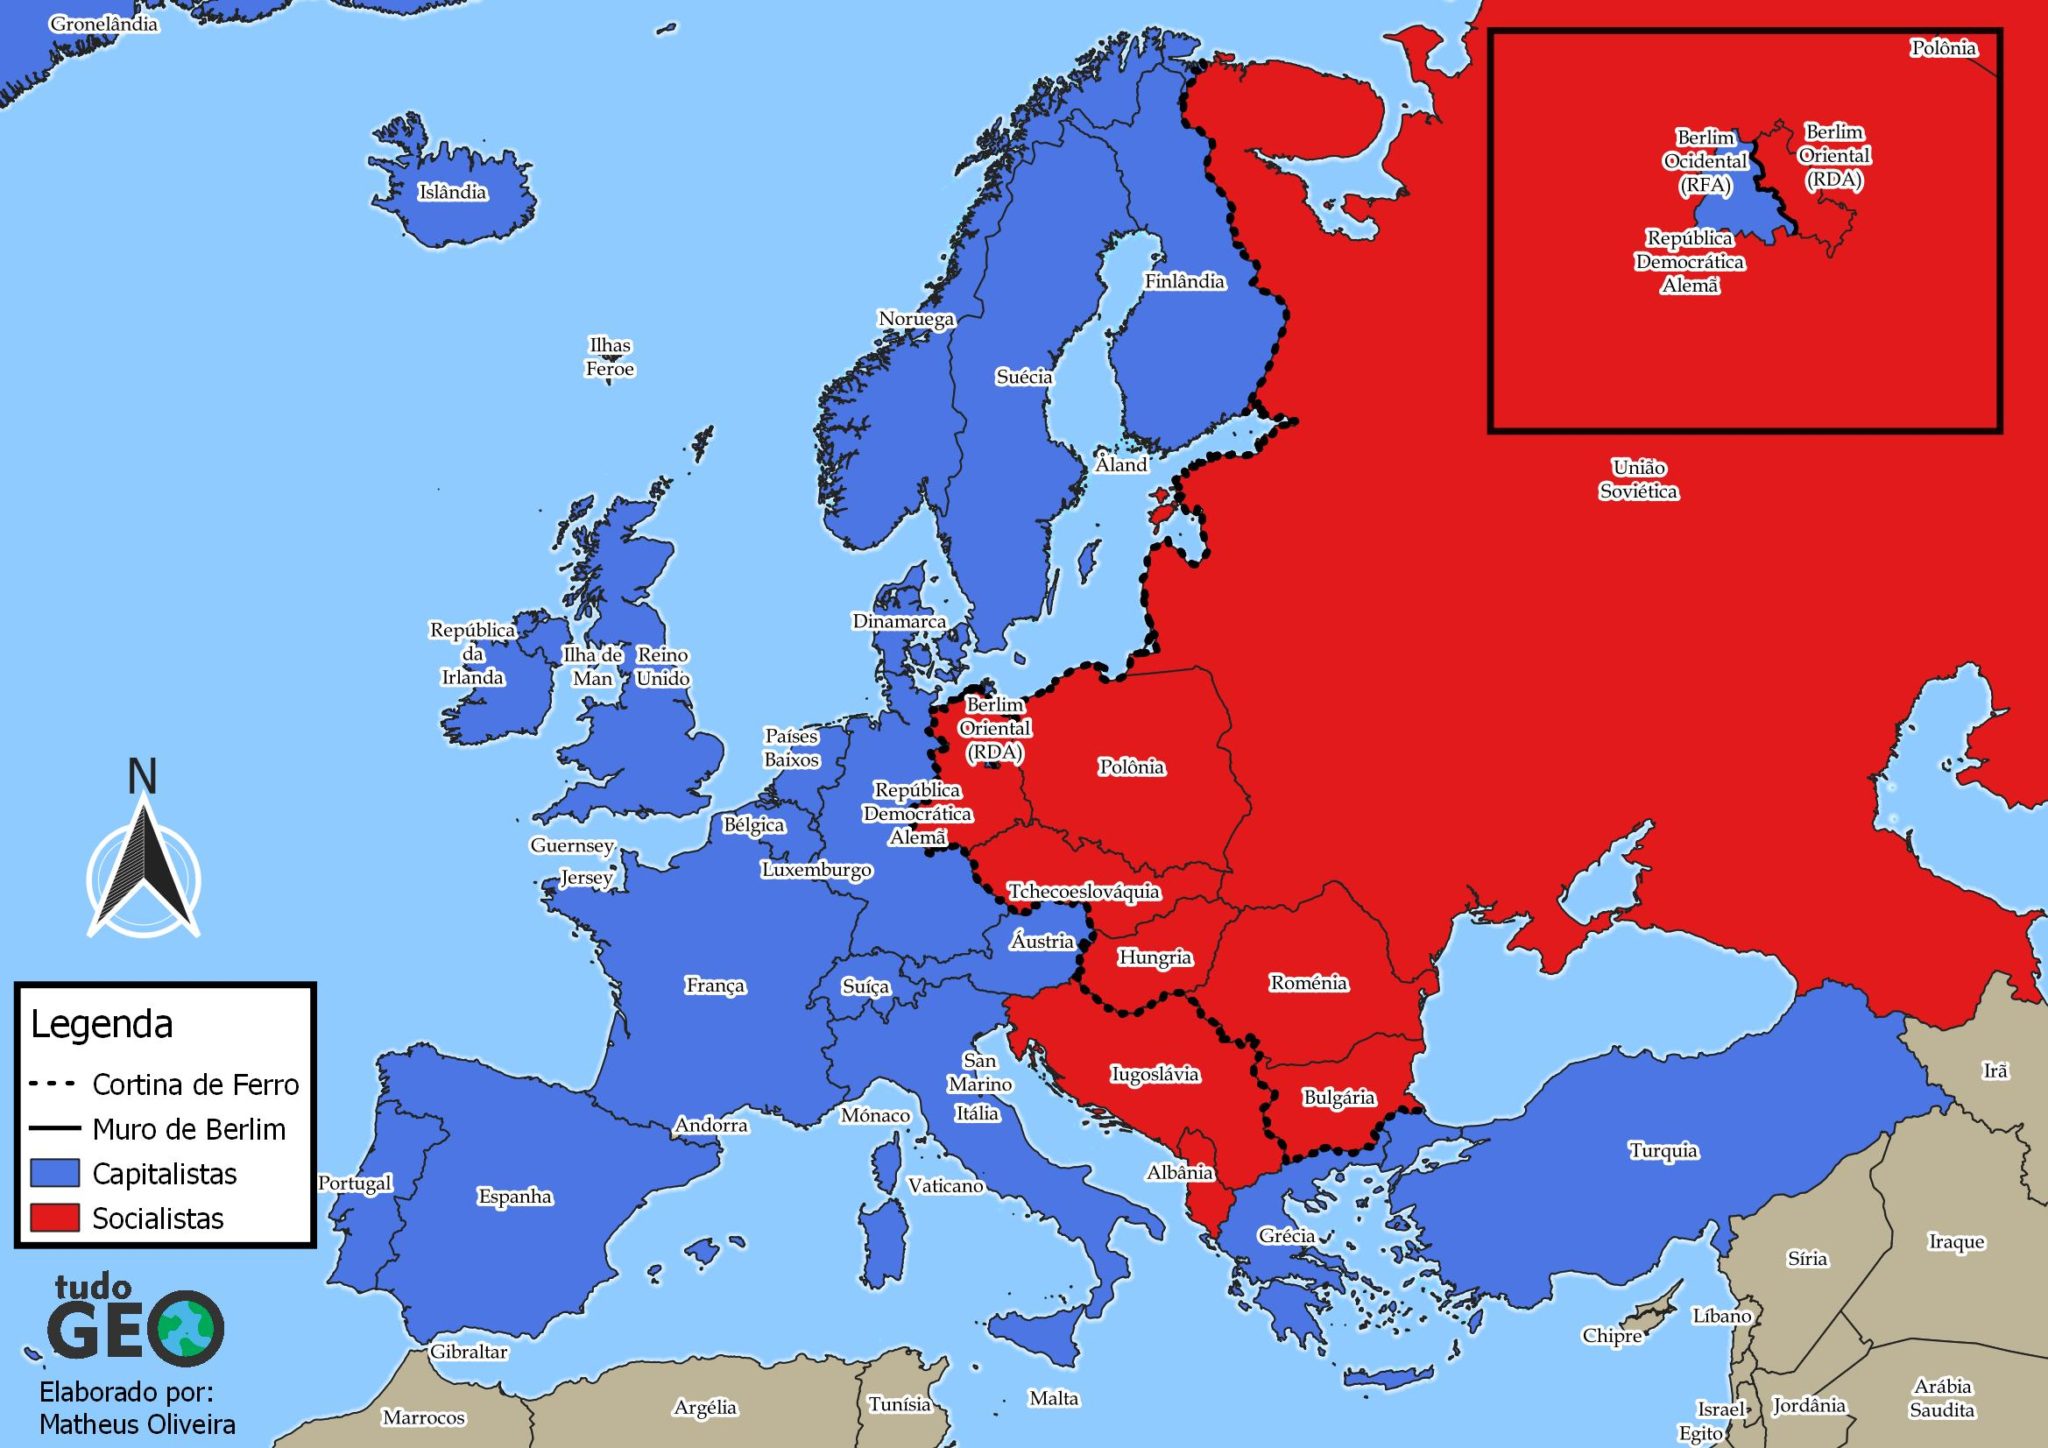 Mapa da Europa: descubra como é dividido e quais países fazem parte